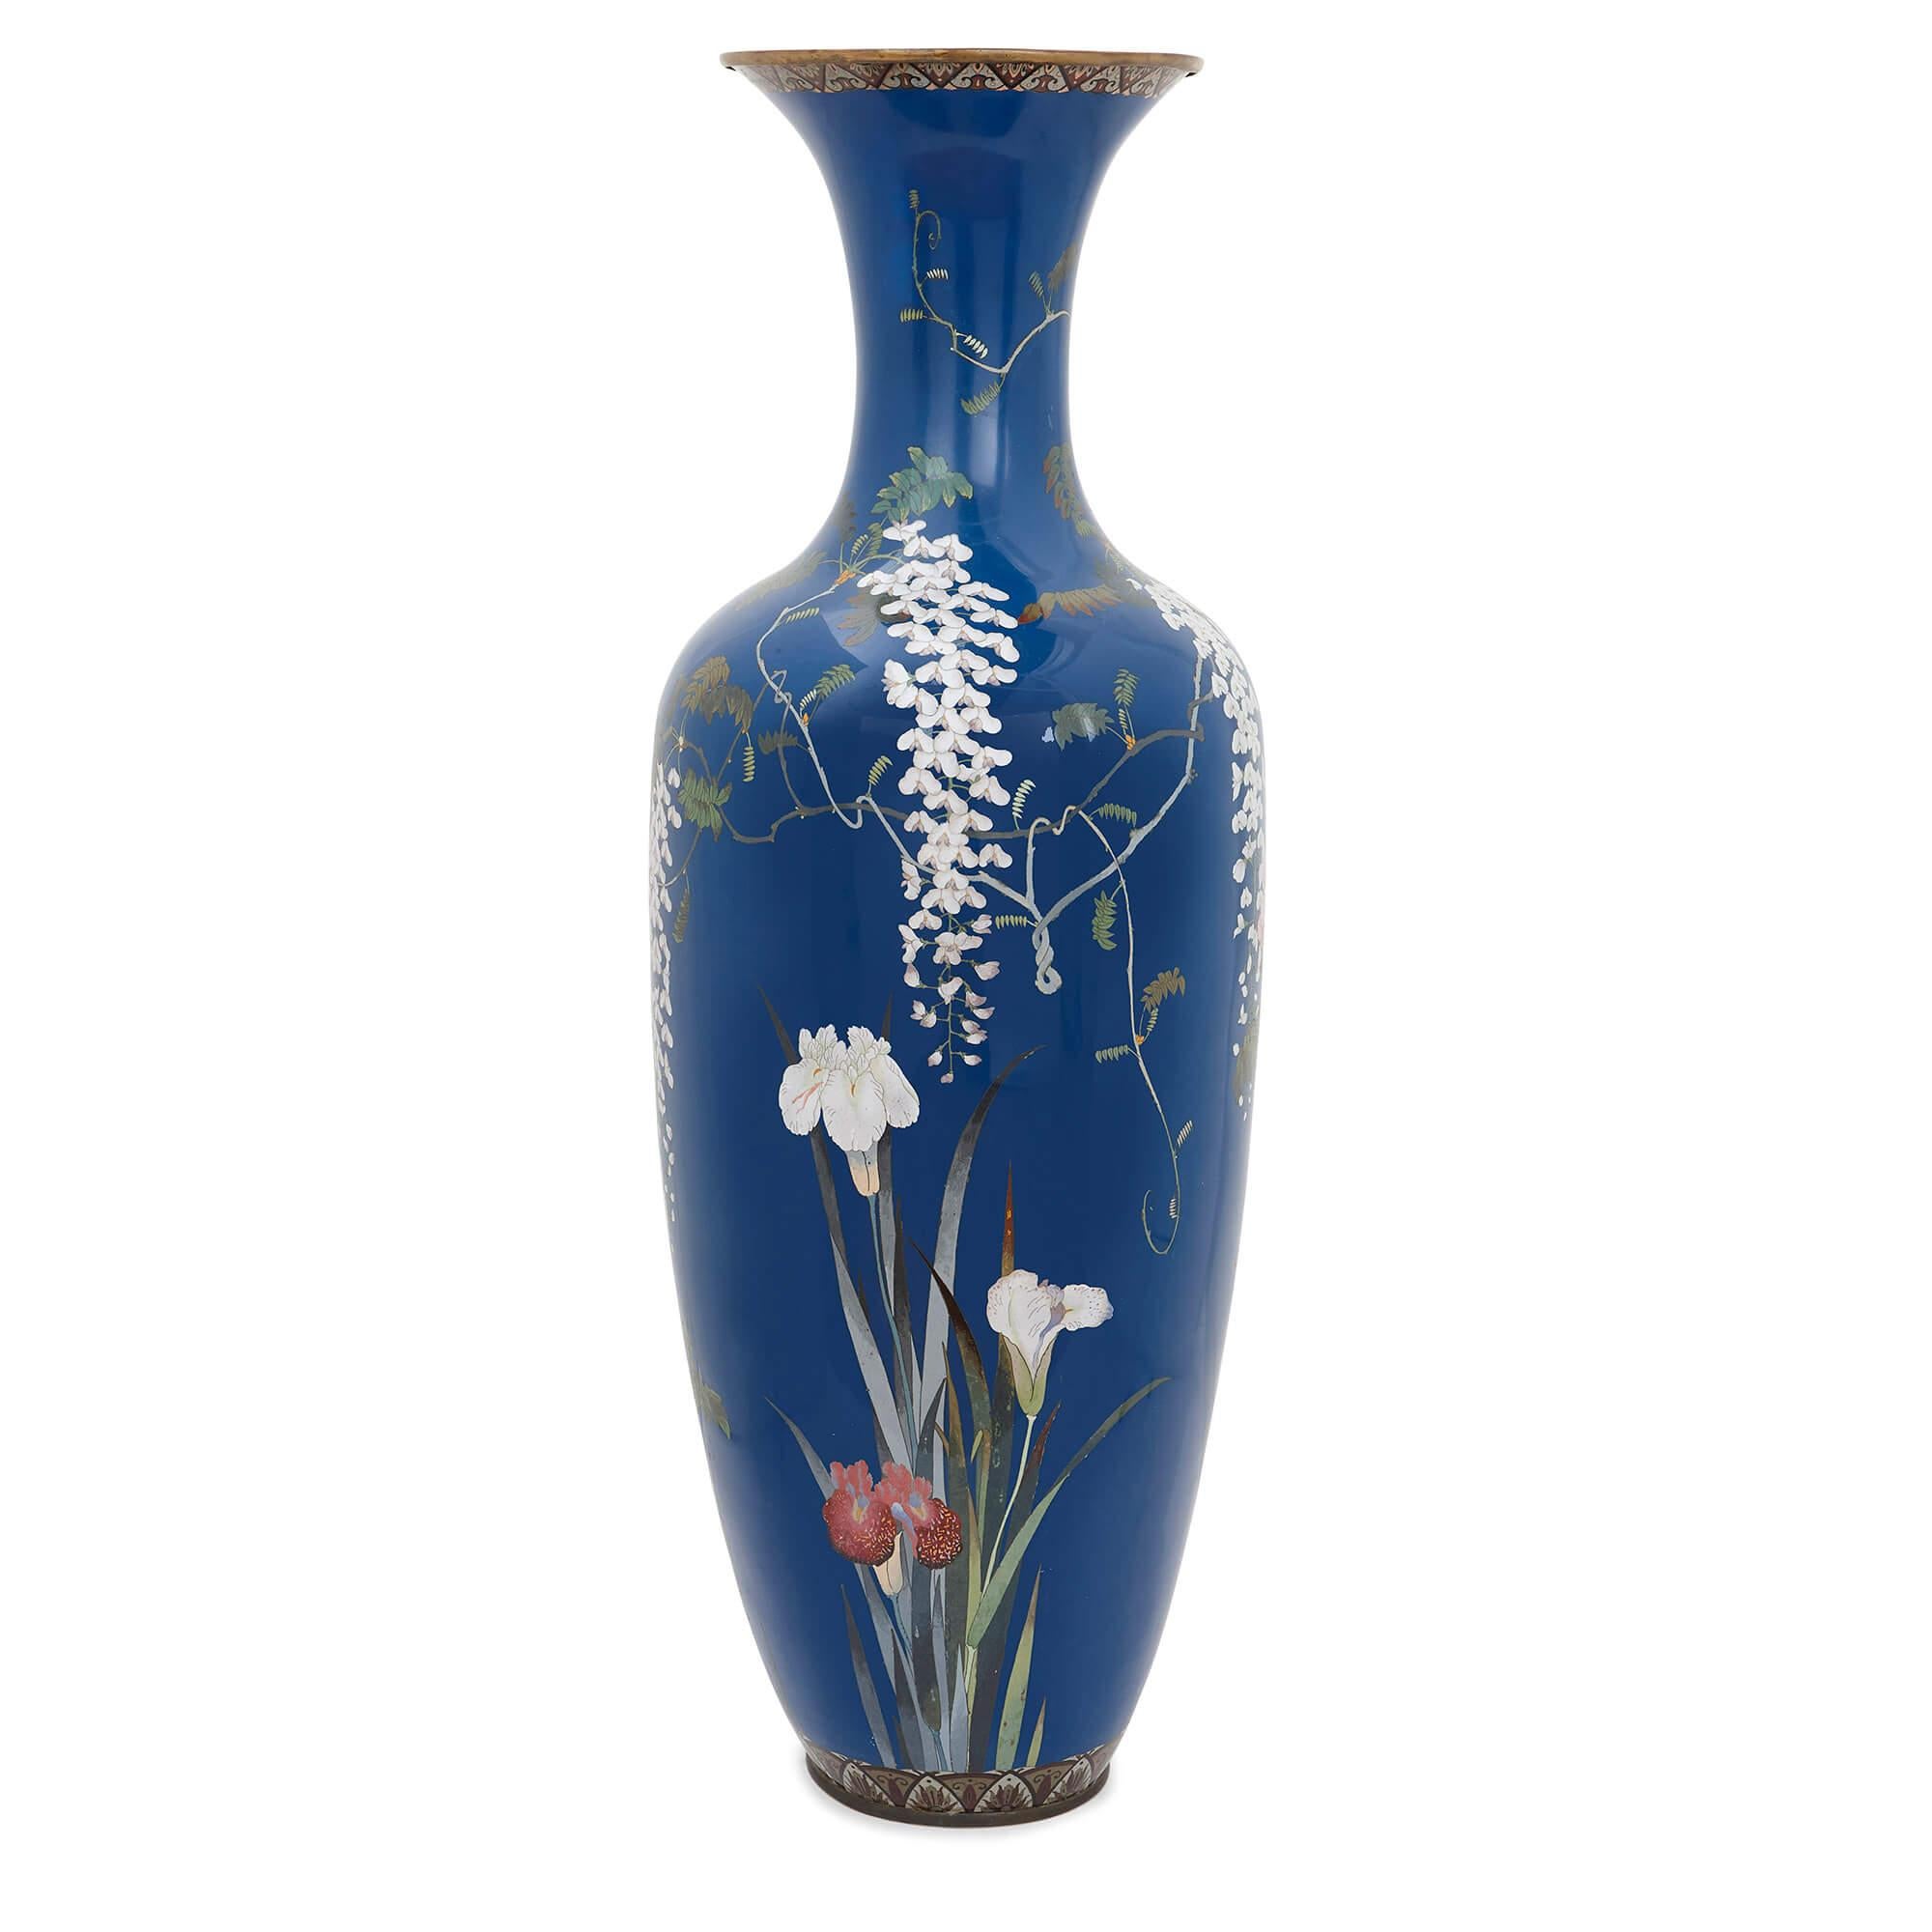 Ce superbe vase de la période Meiji est un merveilleux exemple de la qualité de l'artisanat de la fin du XIXe siècle de la période japonaise Meiji. L'ère Meiji est célèbre pour être la période au cours de laquelle le Japon a commencé à commercer